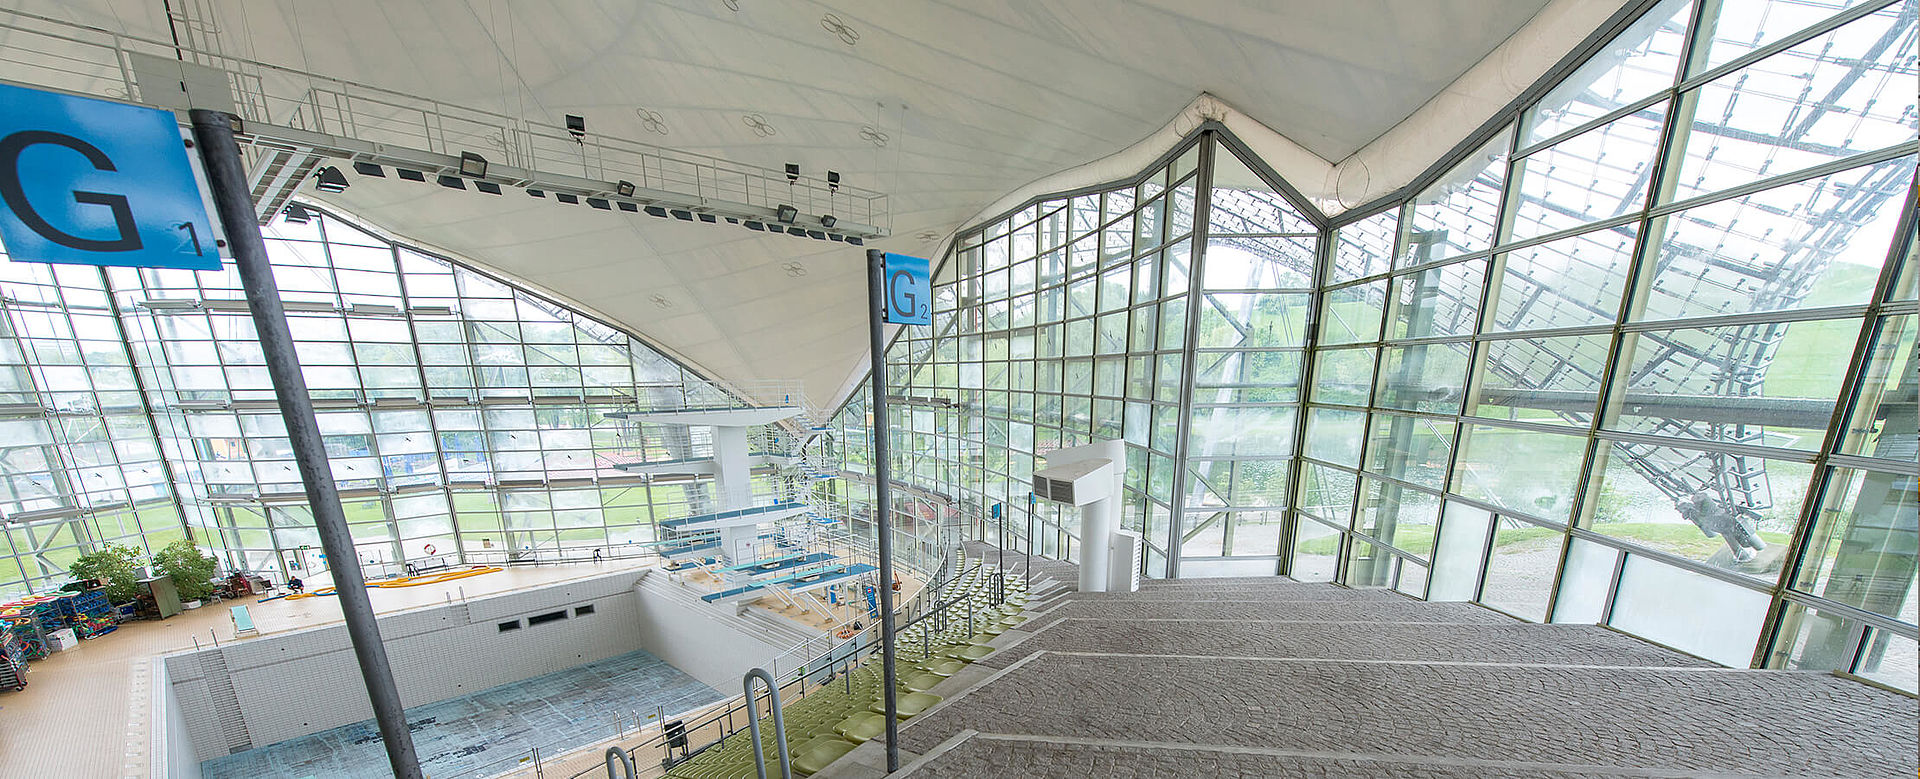 Architektonisch außergewöhnliche Konstruktion die Olympiaschwimmhalle in München.